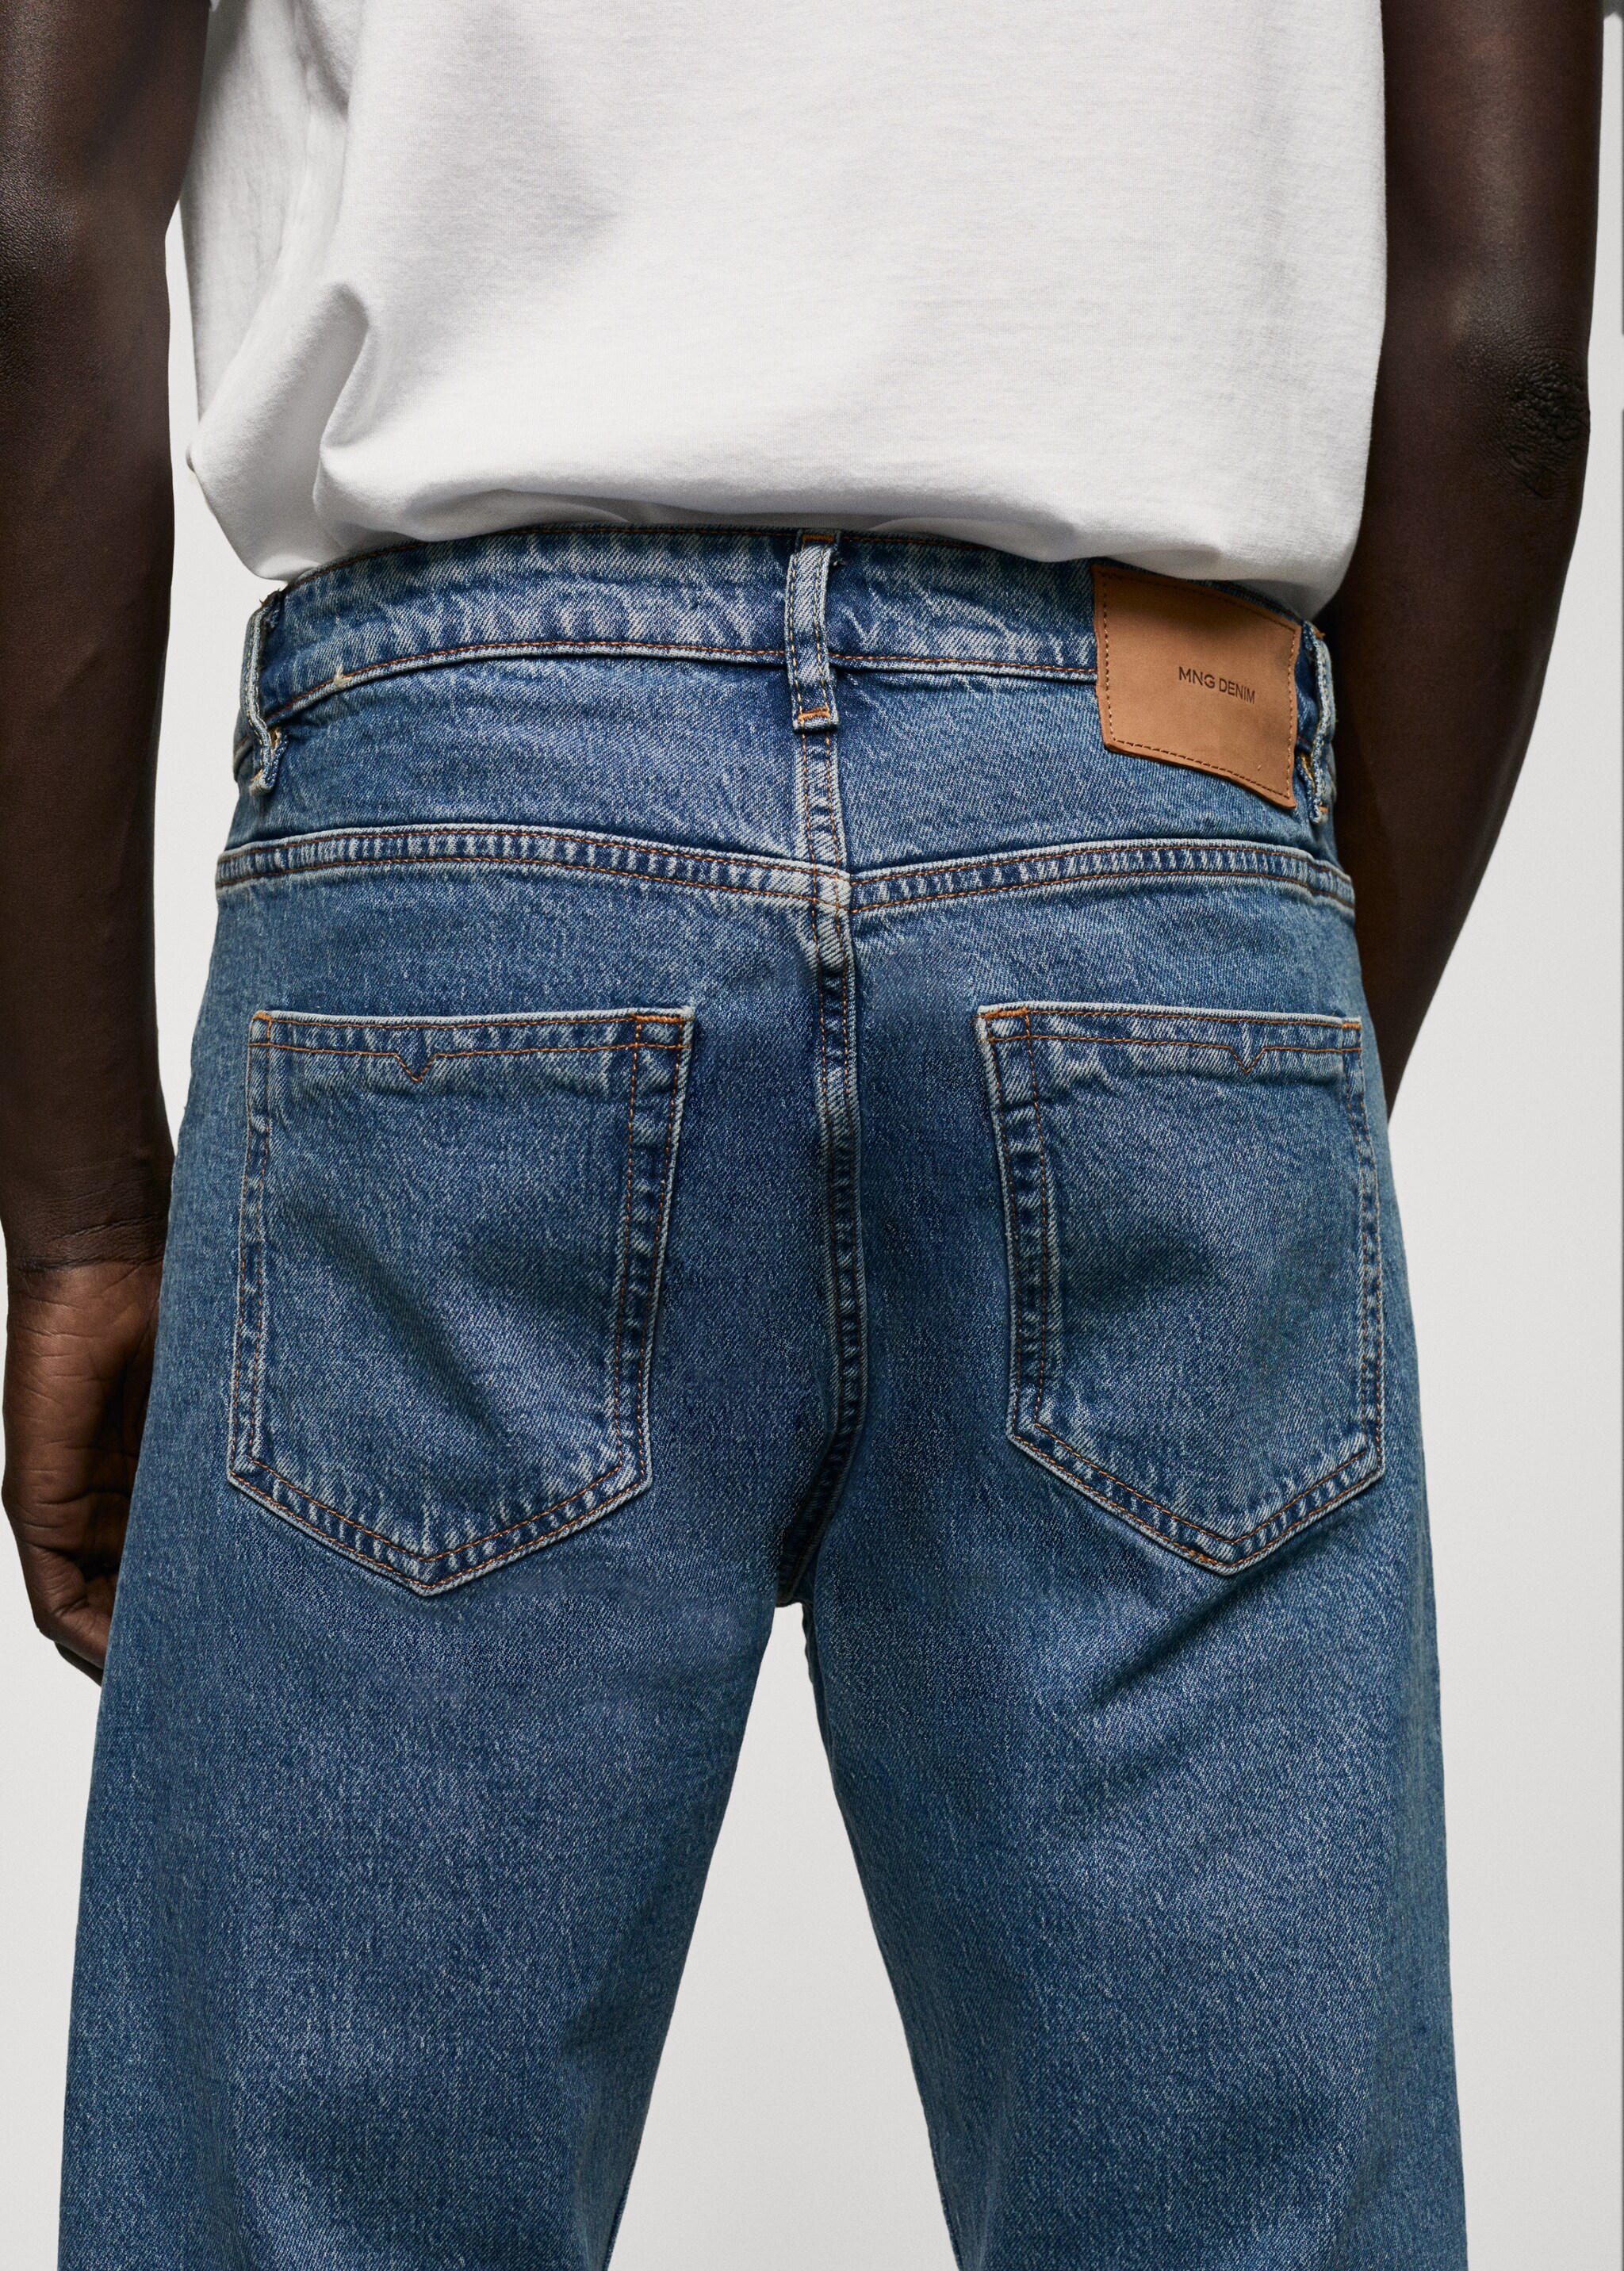 Jeans Ben tapered cropped - Artikkeldetalj 6